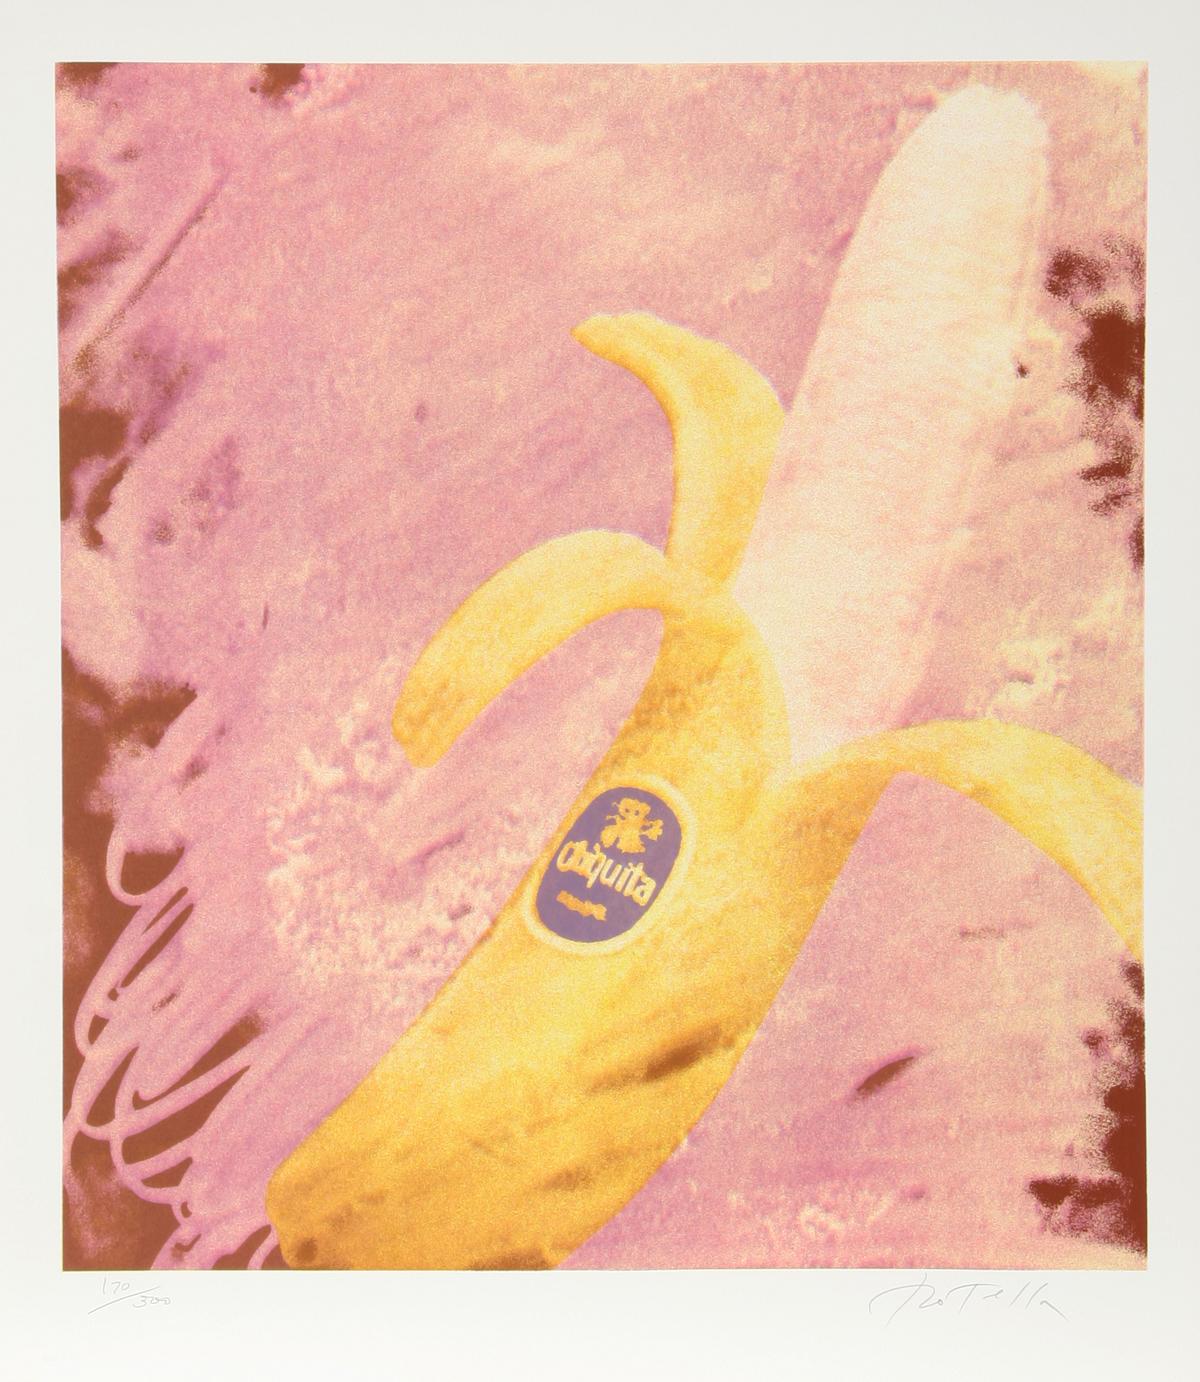 Künstler: Mimmo Rotella
Titel: Chiquita
Jahr: 1979
Medium: Serigraphie, signiert und nummeriert mit Bleistift 
Auflage: 300
Größe: 30 x 26 Zoll (76,2 x 66 cm) 